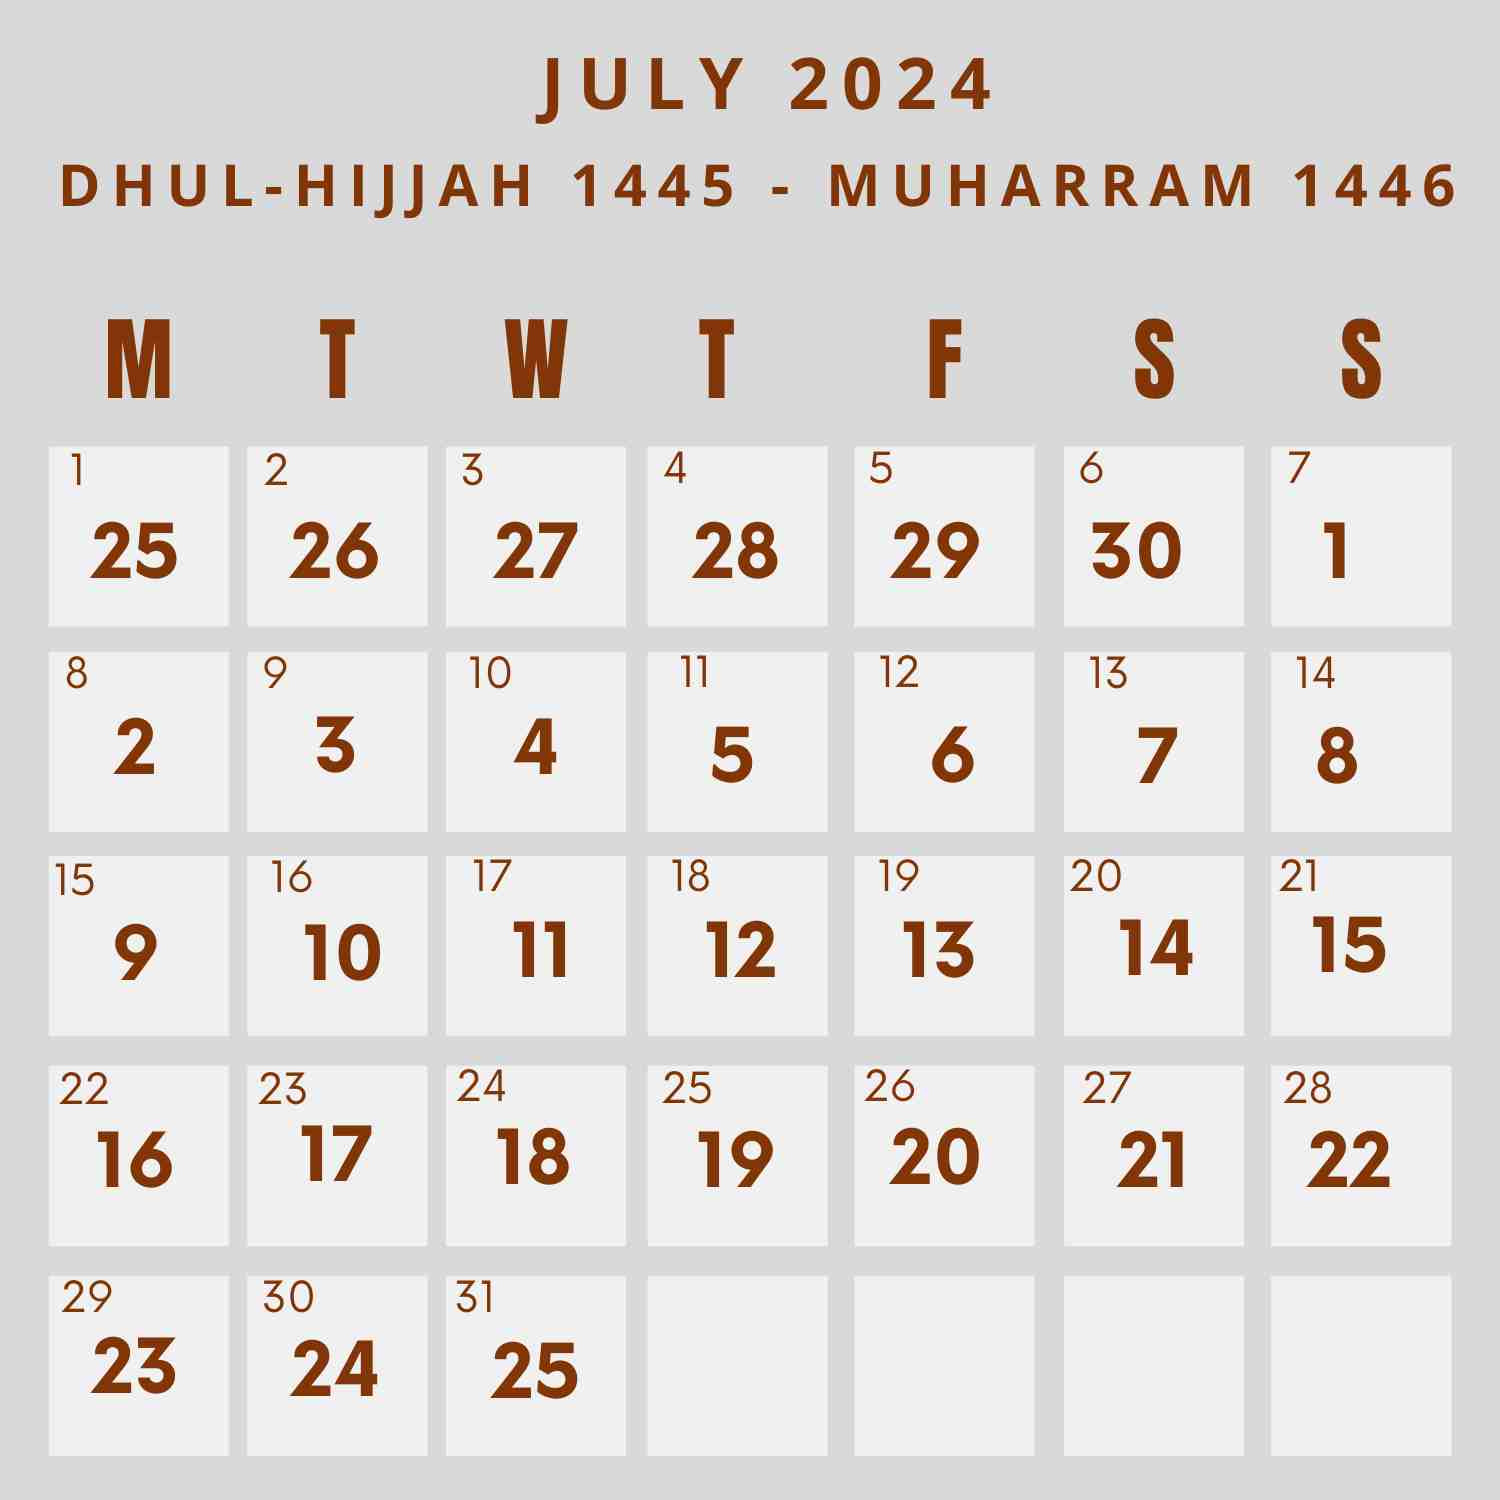 Islamic Calendar 2024 - Khwajadarbar within 25 July 2024 in Islamic Calendar